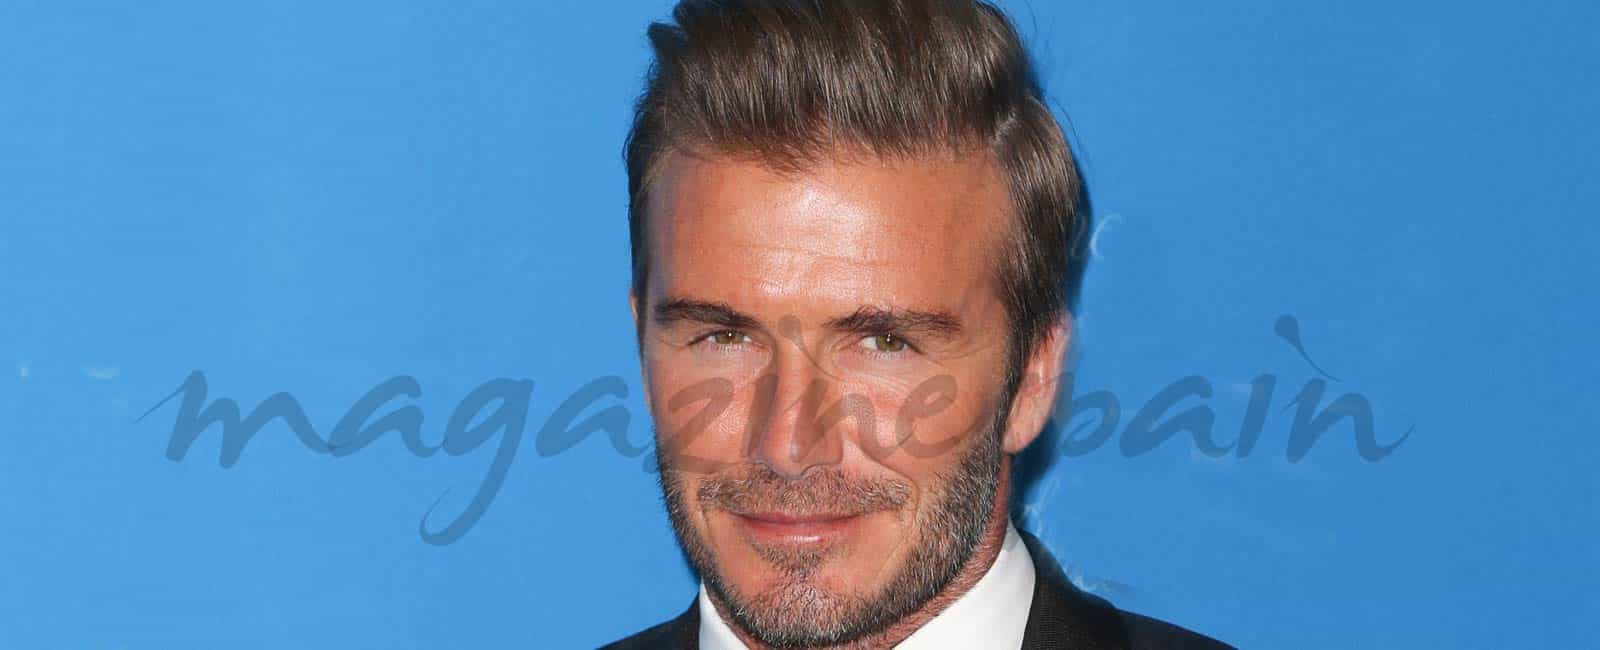 ¿Quieres ver el nuevo tatuaje de David Beckham?